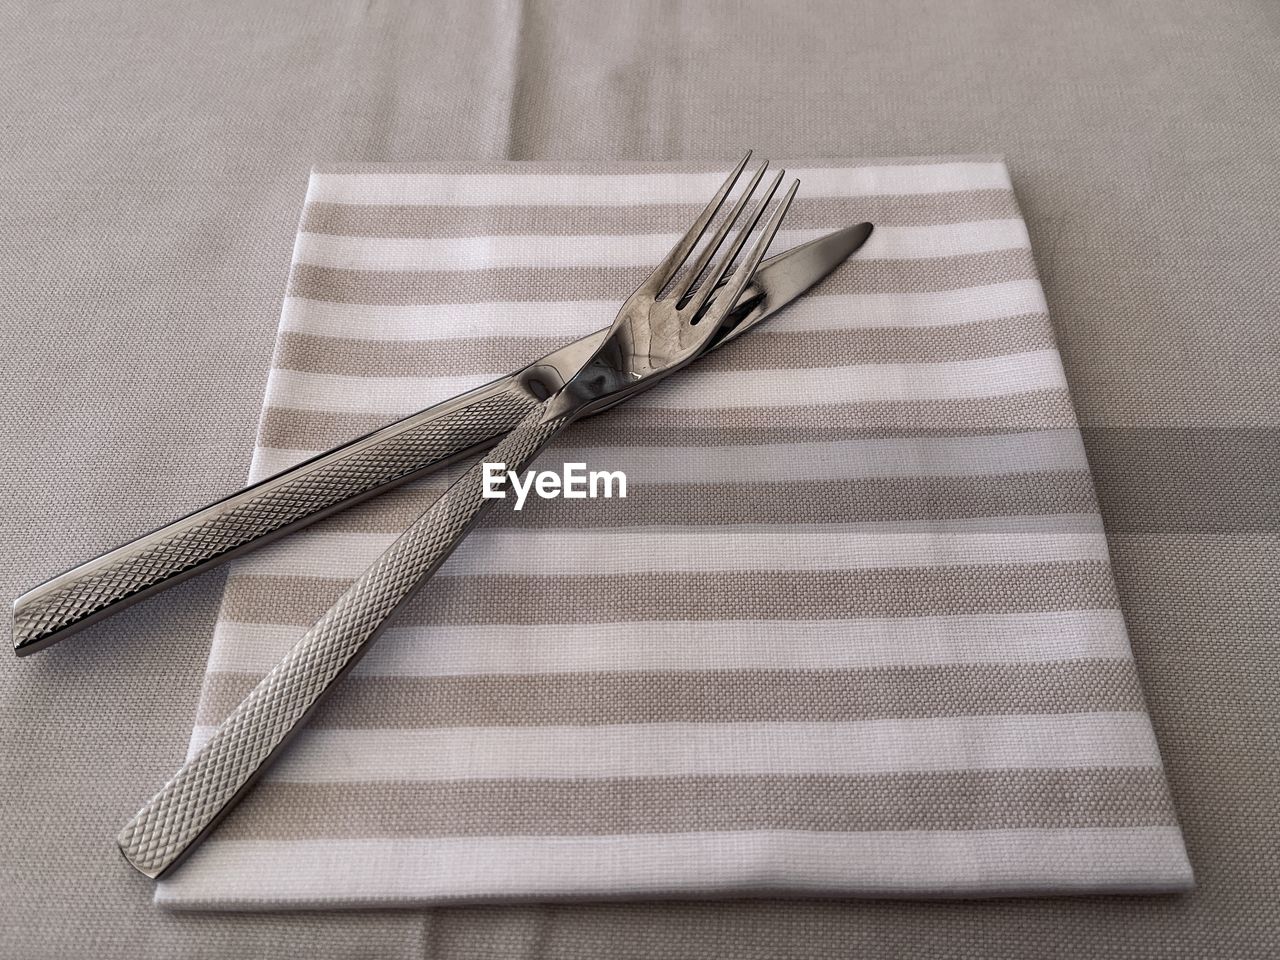 Cutlery on napkin